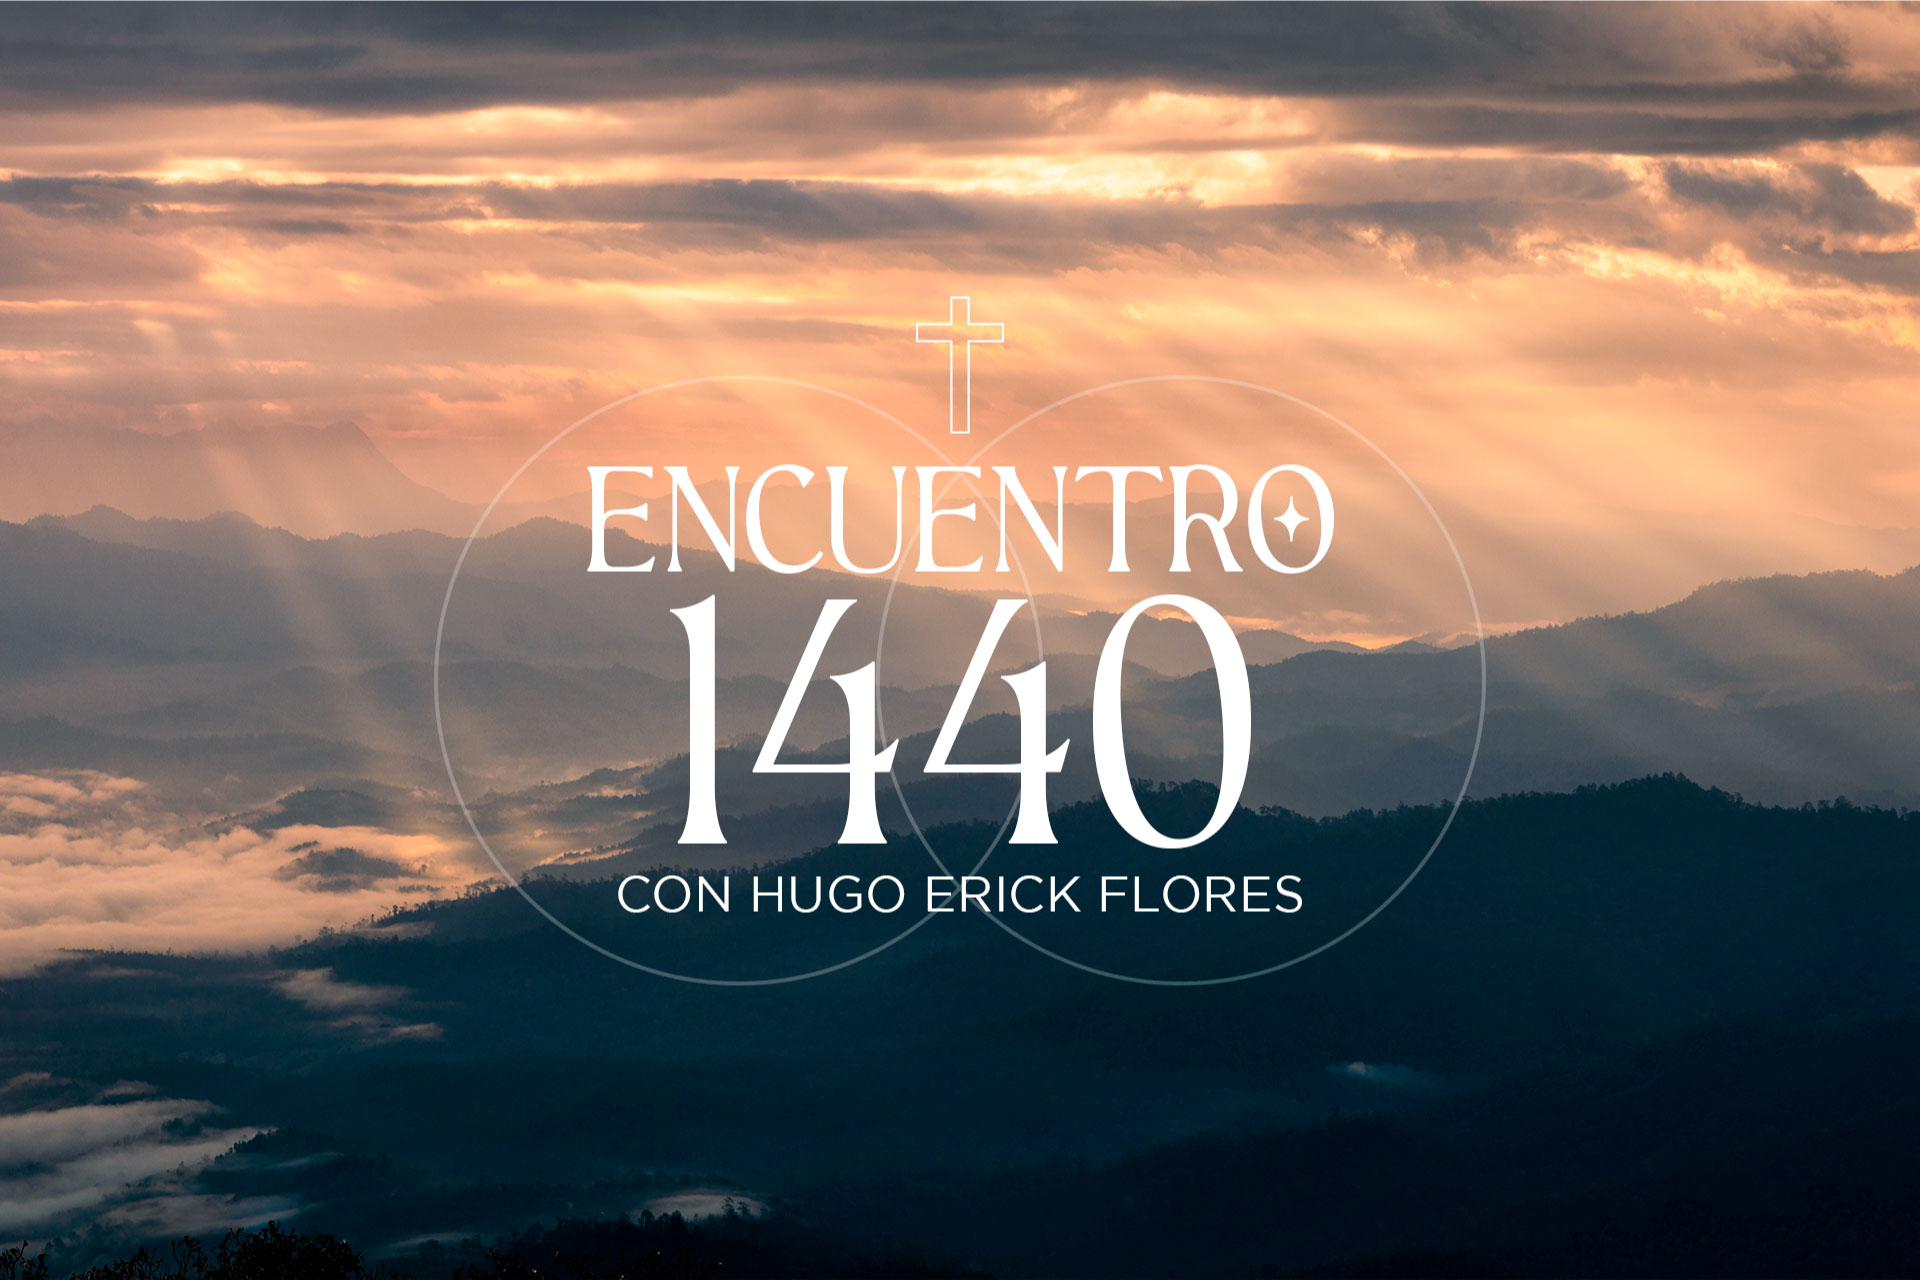 Encuentro 1440